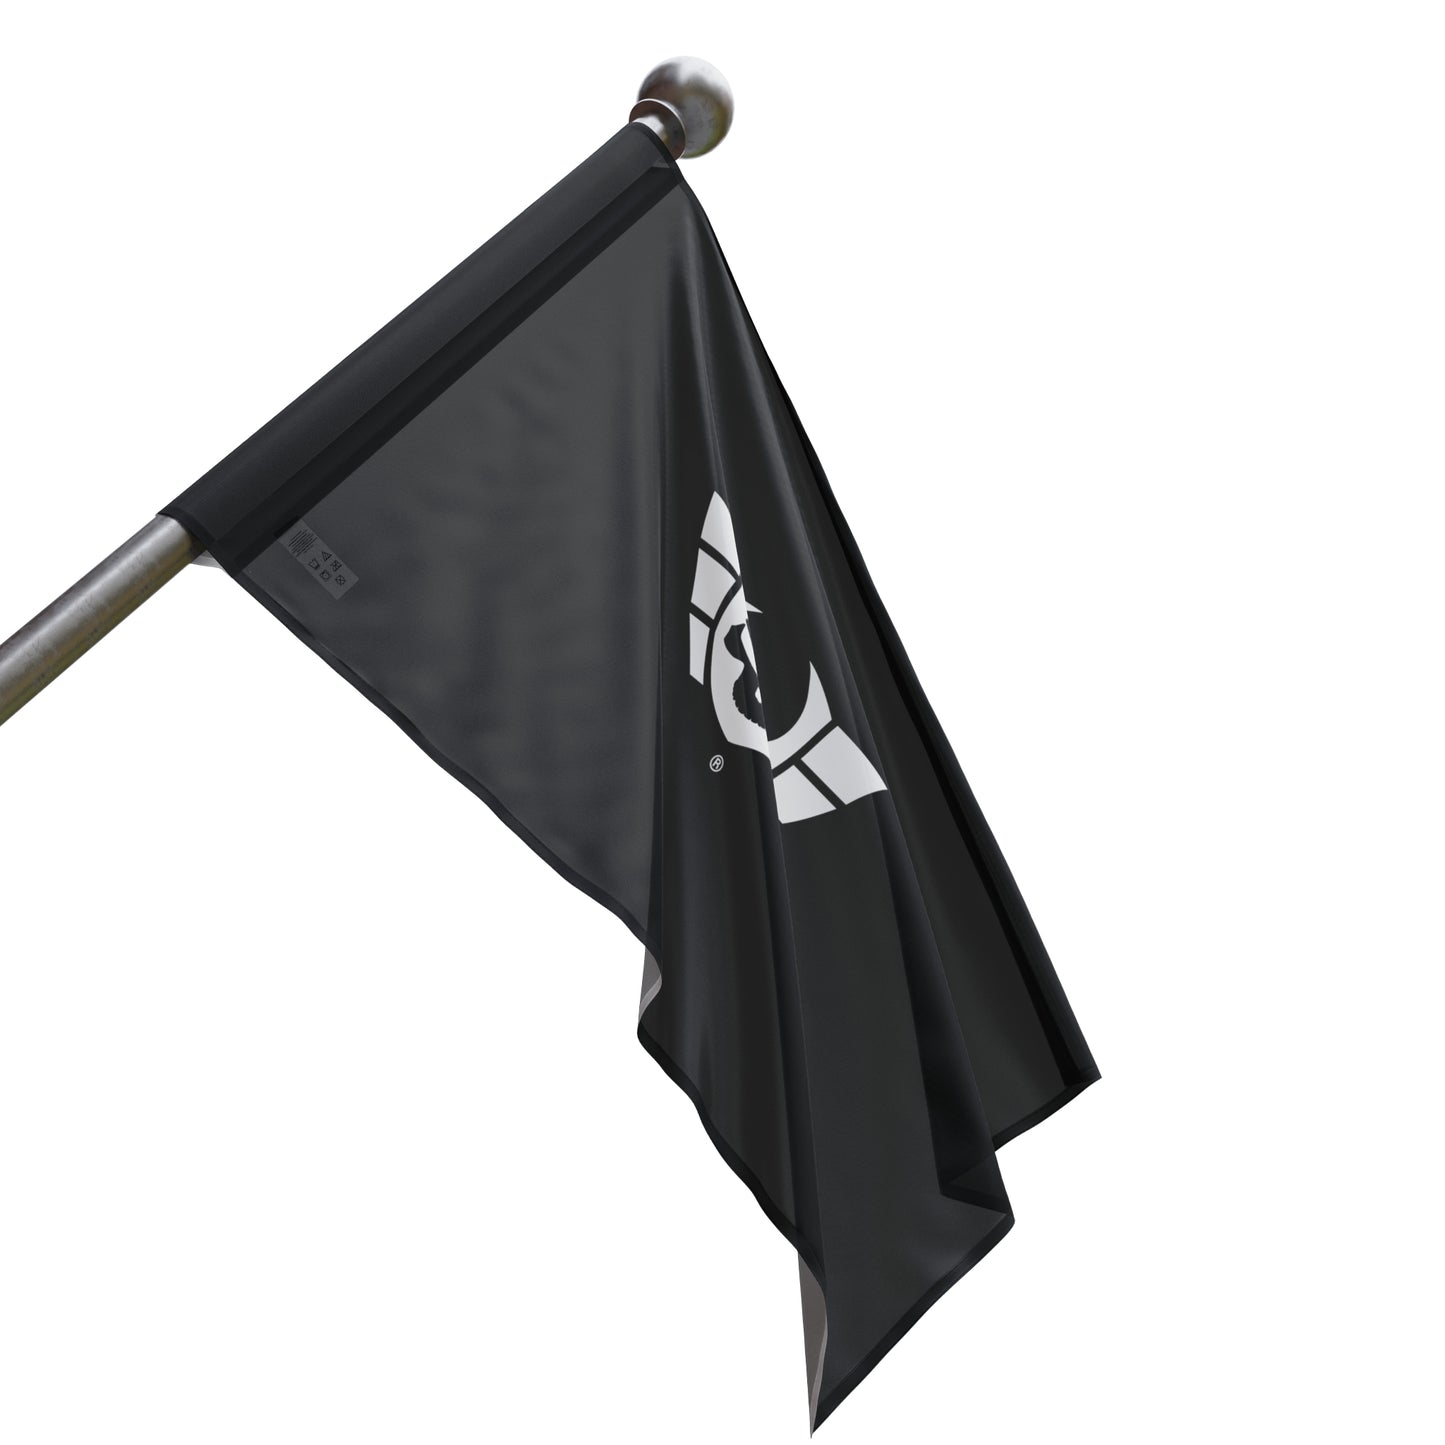 Warsaken® Flag : Black